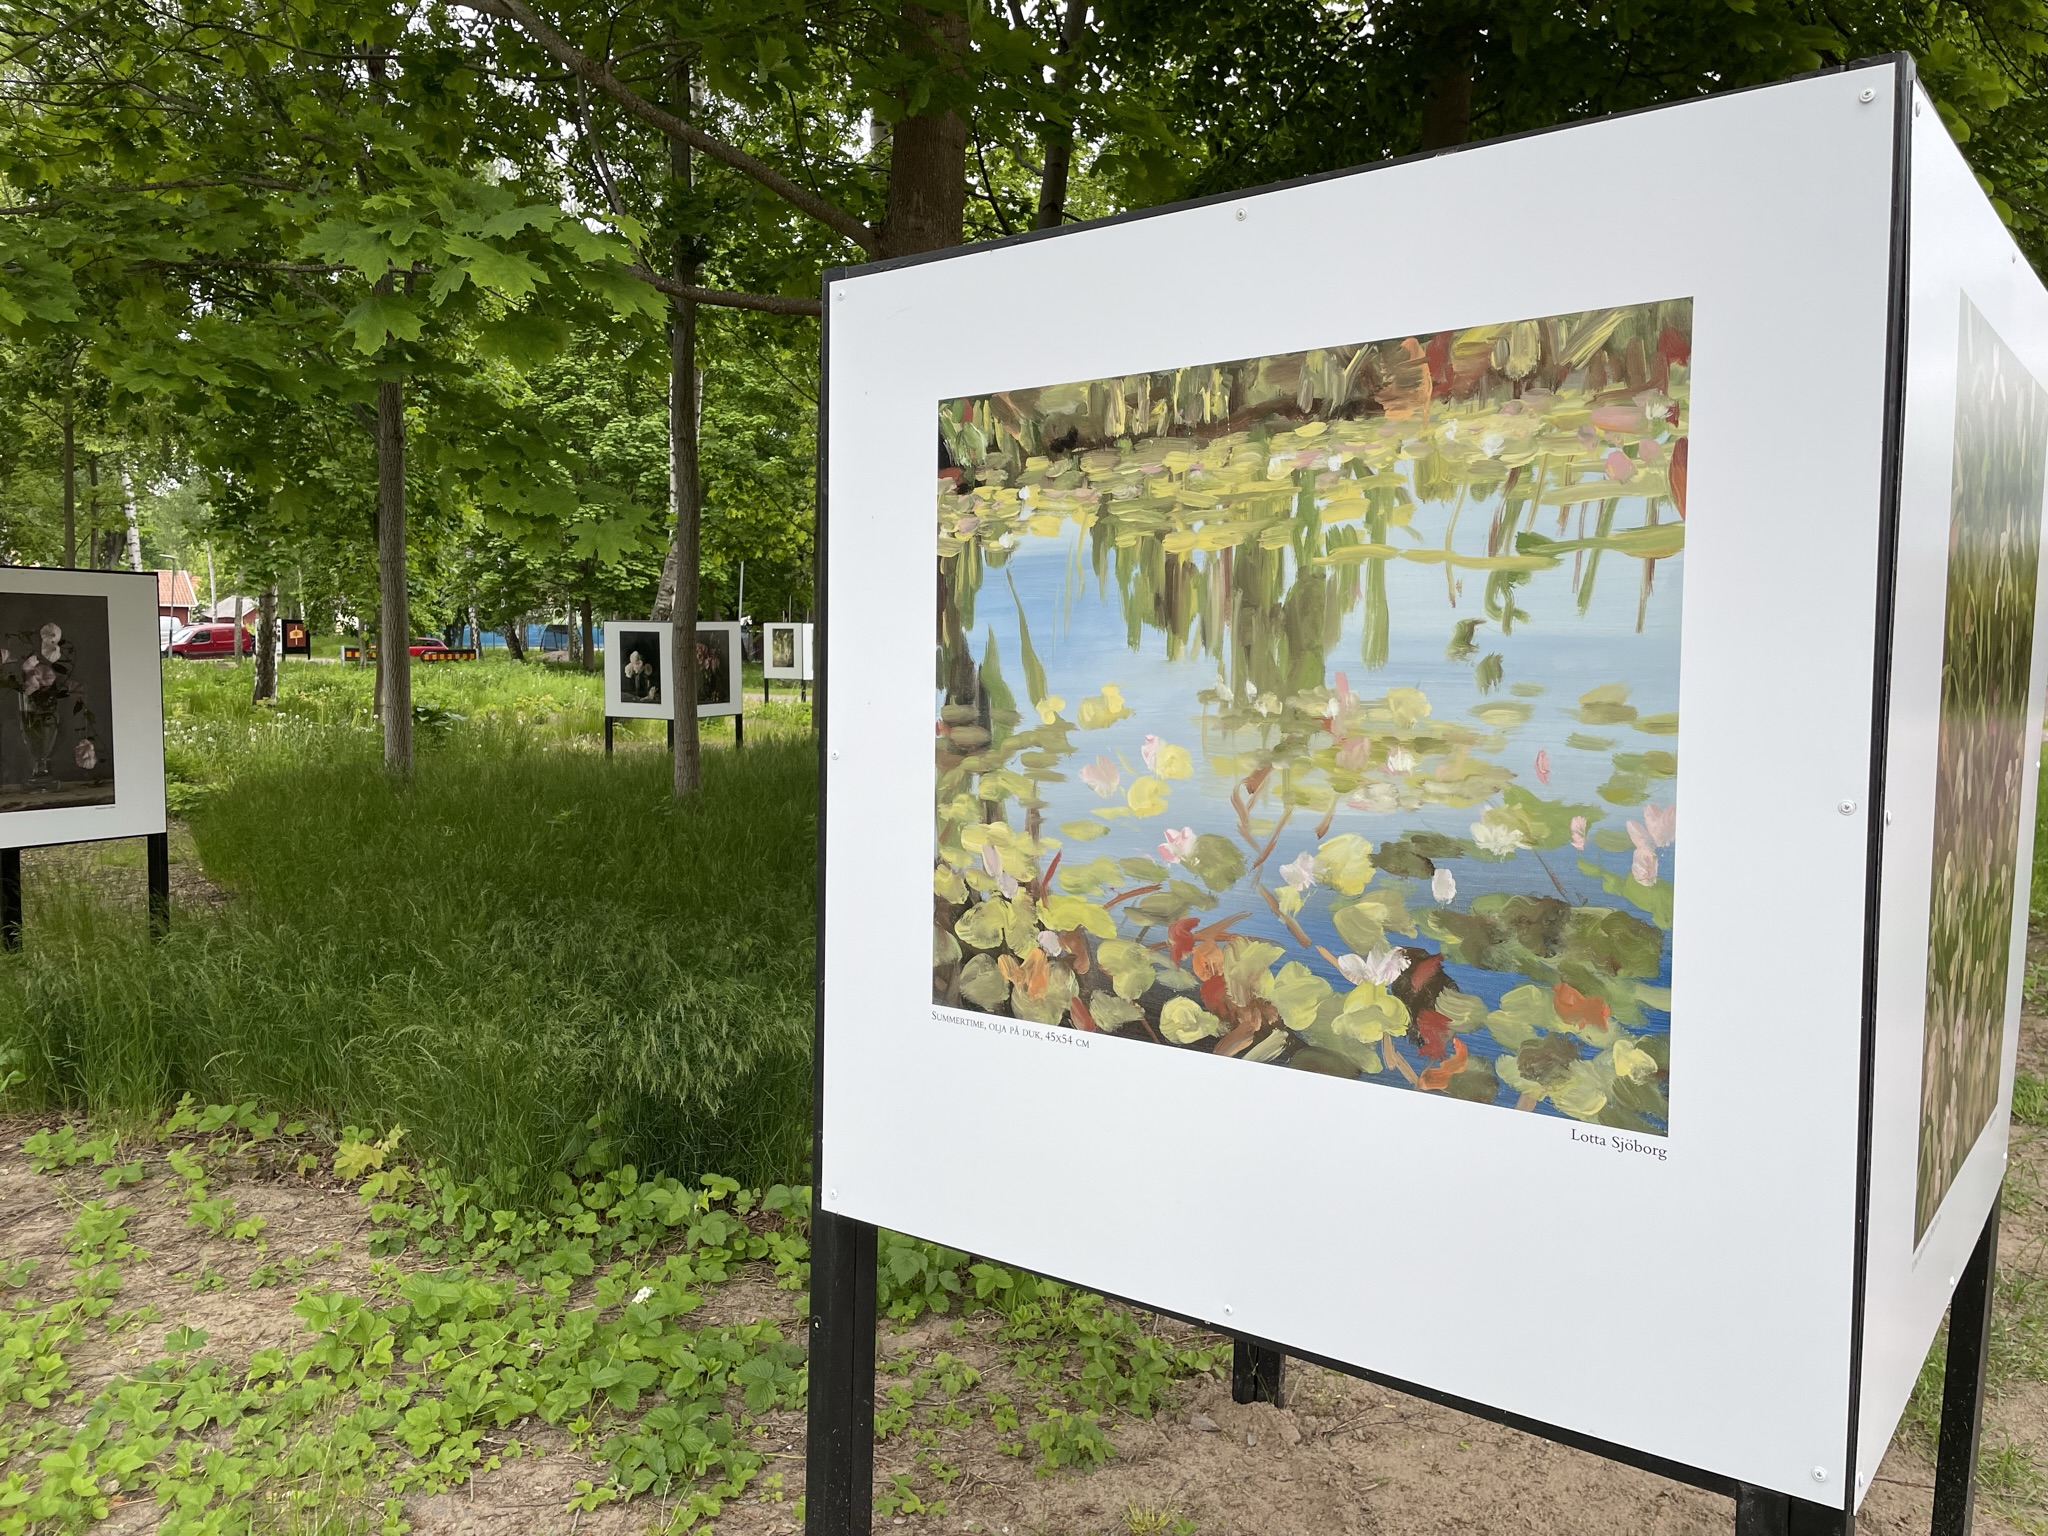 På de vita triangelformade skärmarna i Ringenparken syns olika typer av motiv från olika konstnärer. På skärmen i blickfånget ses en oljemålning över näckrosblad i en sjö.